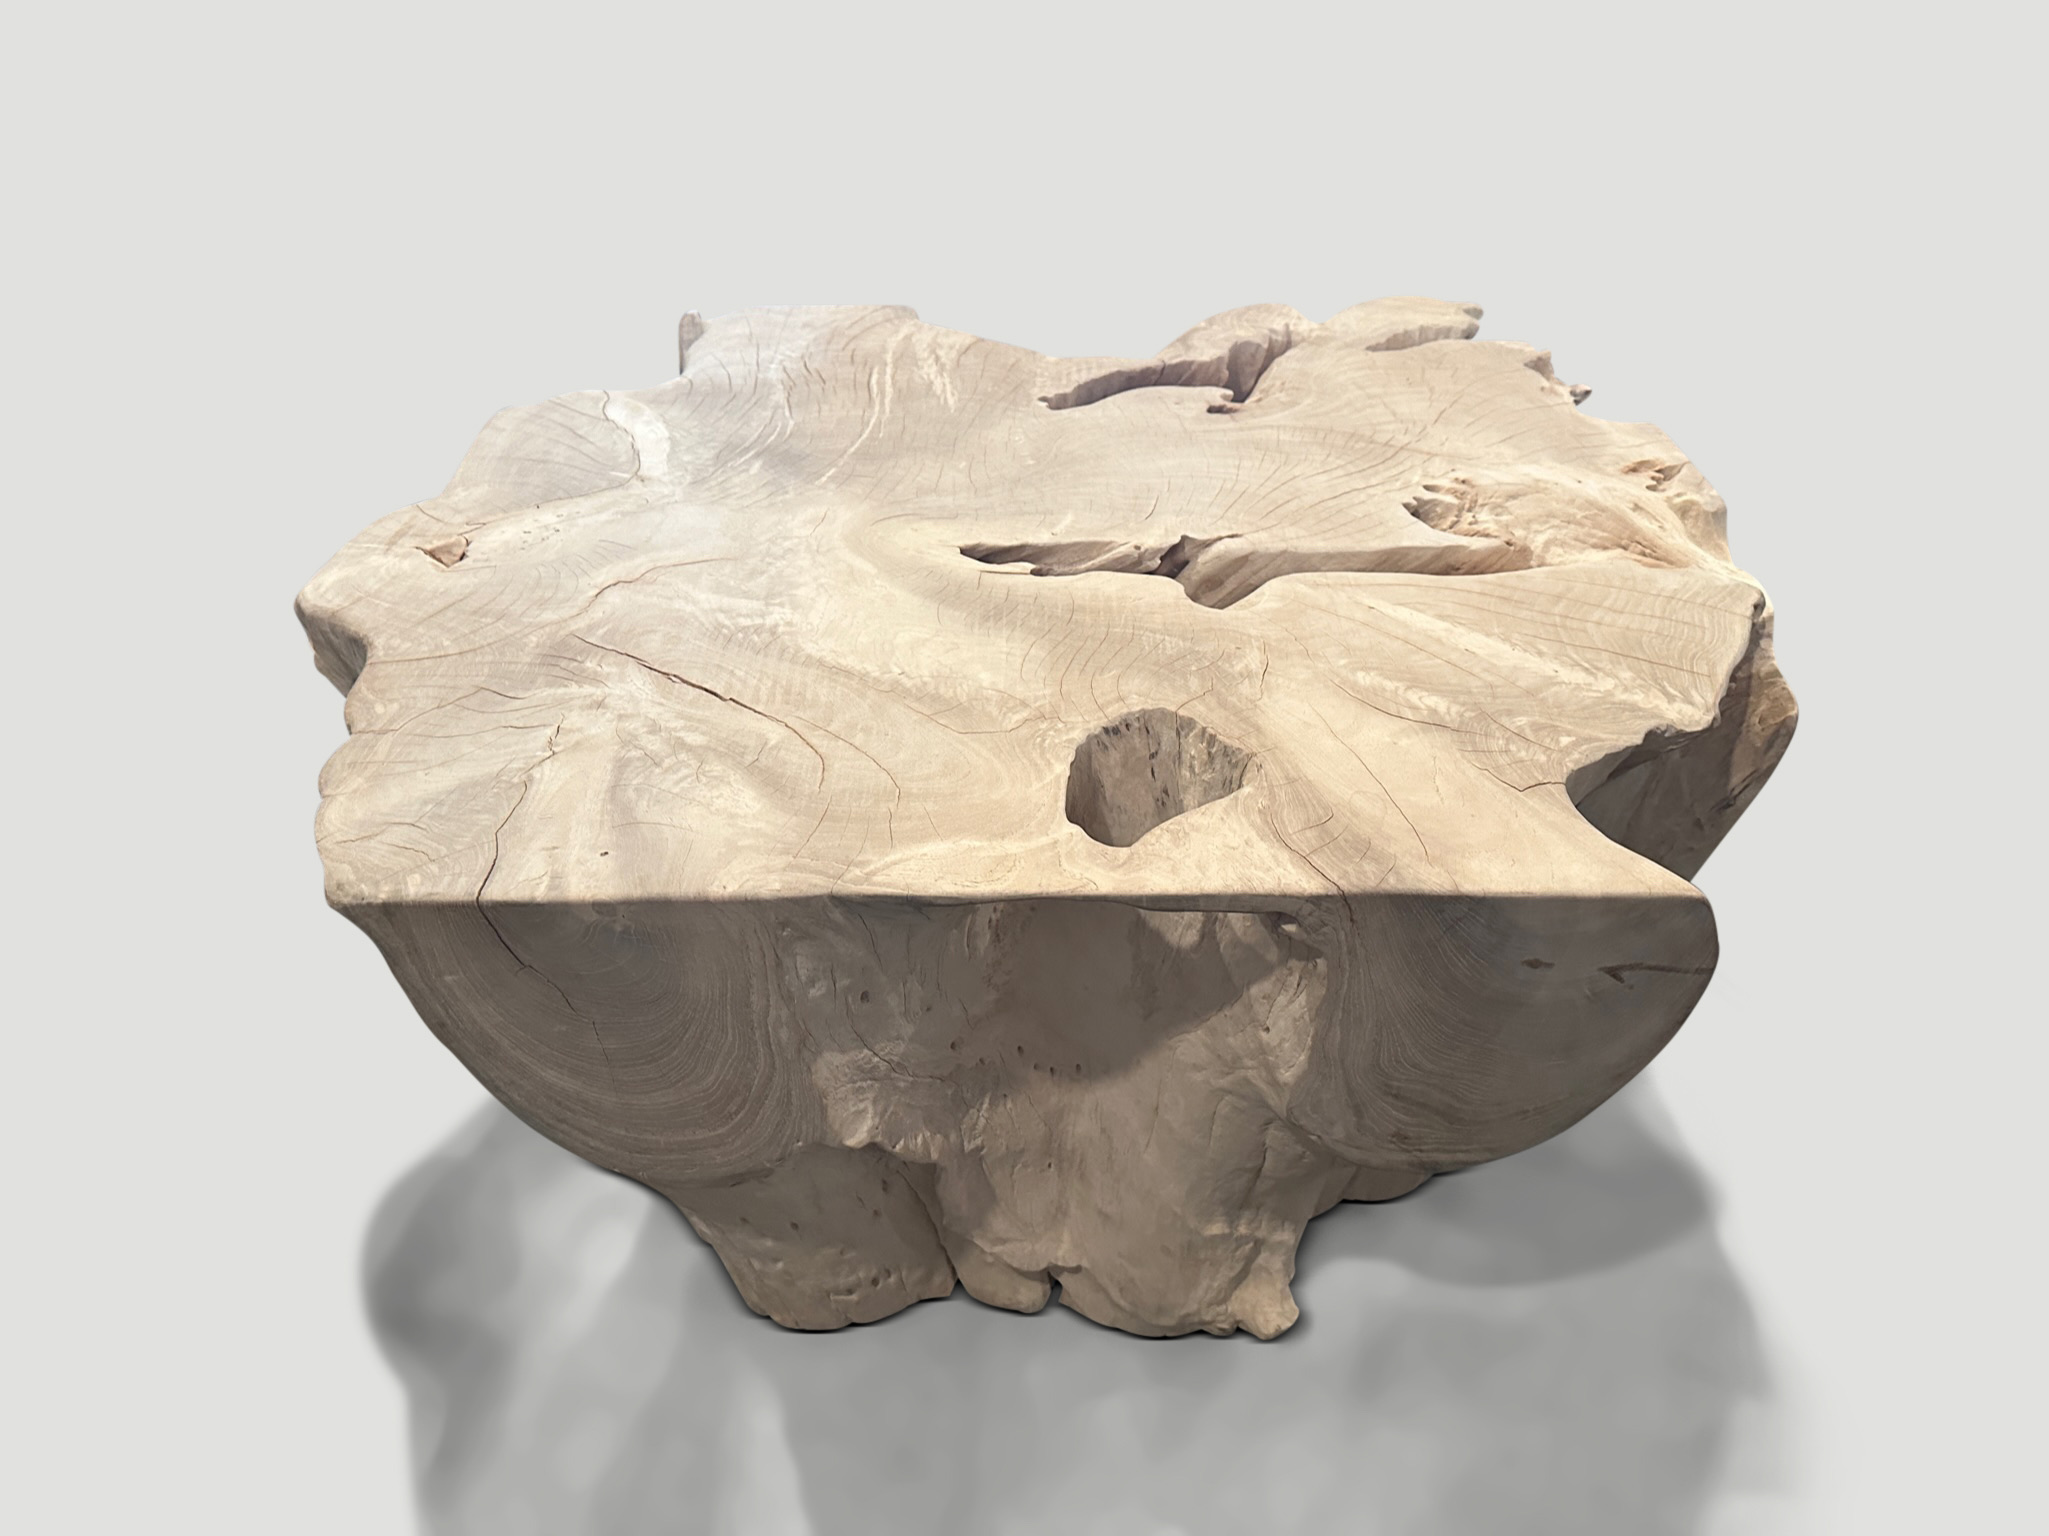 bleached teak root coffee table or pedestal